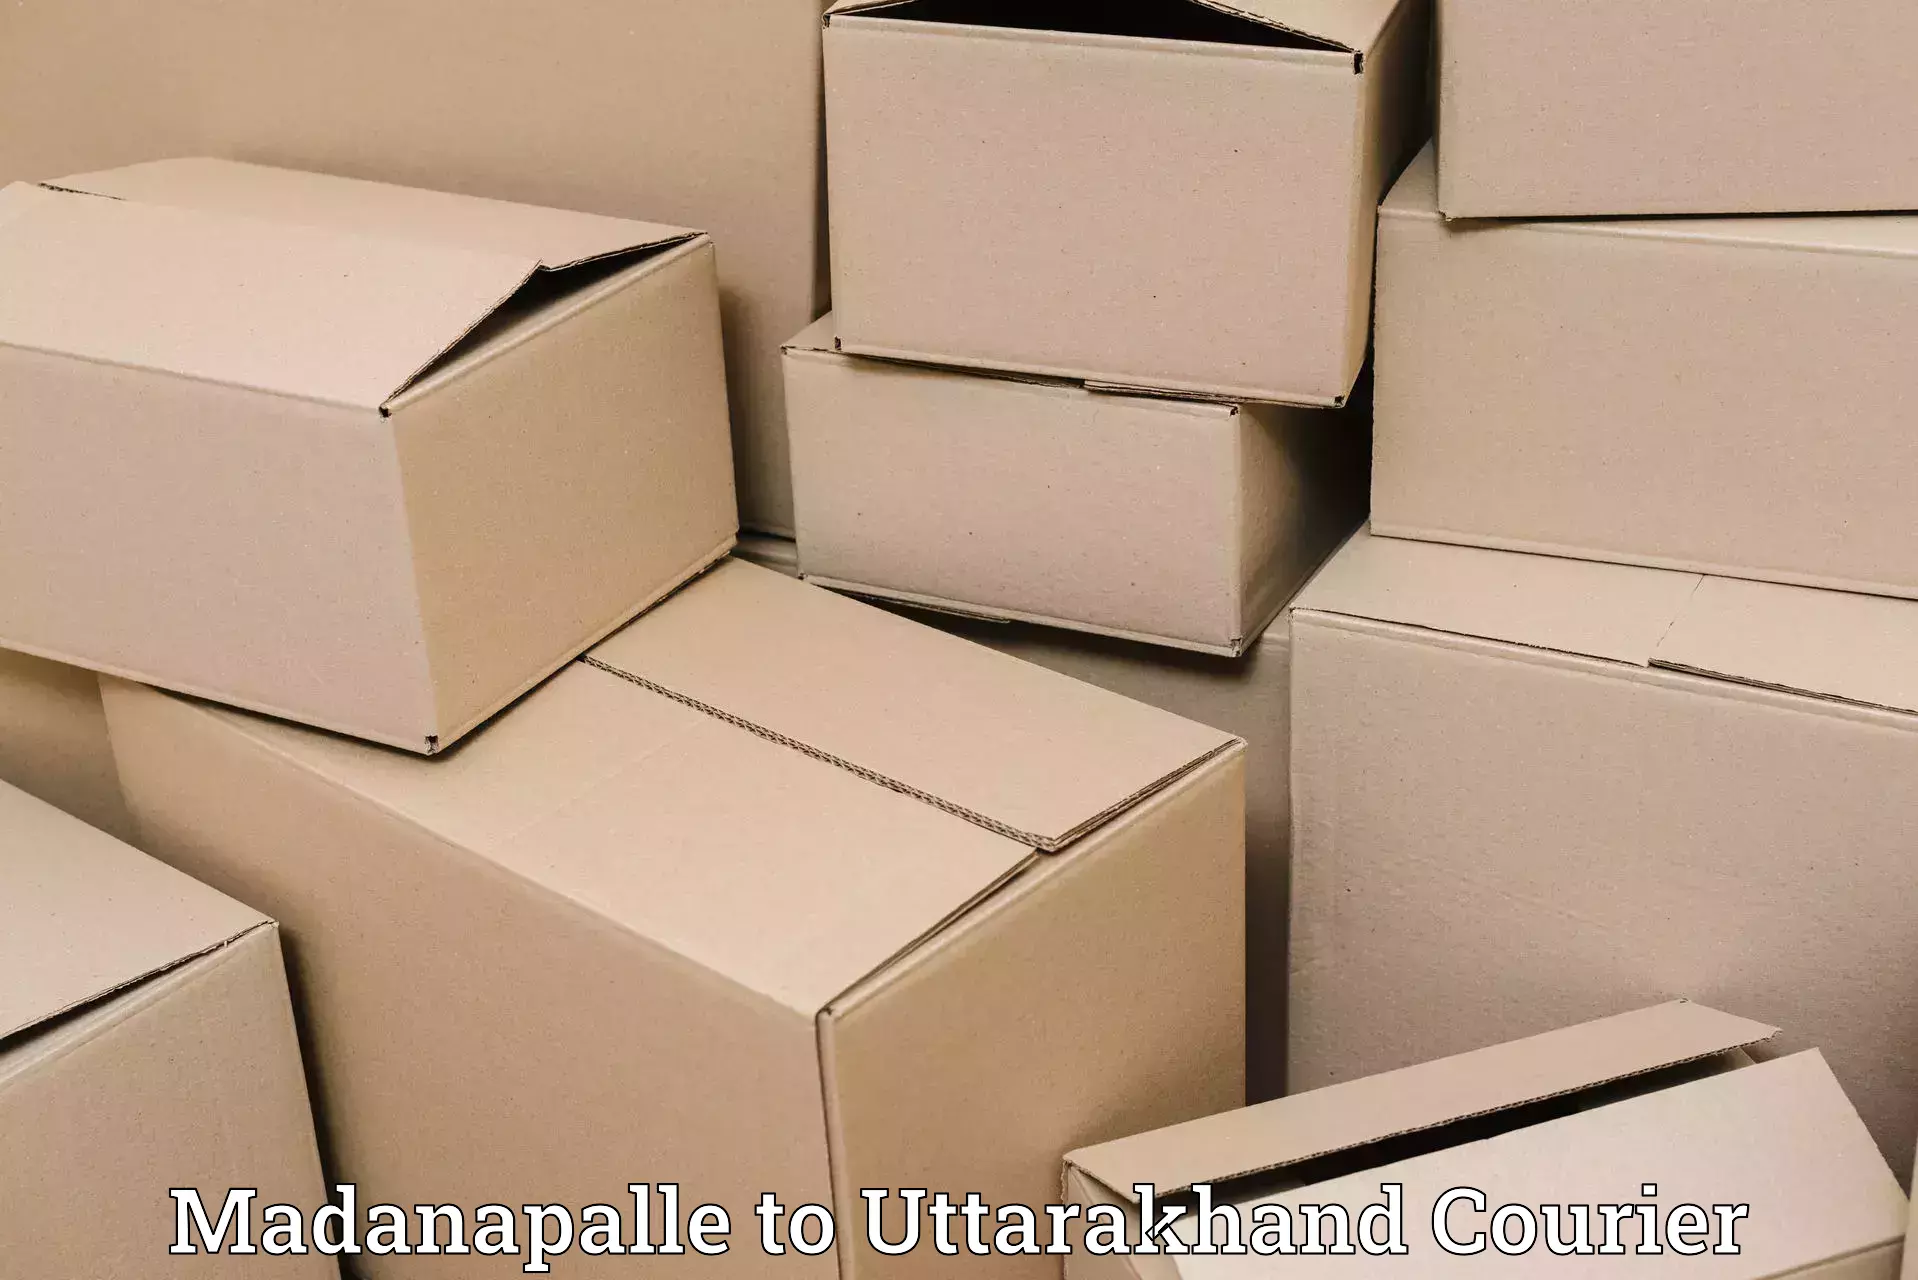 Cargo delivery service Madanapalle to Tehri Garhwal